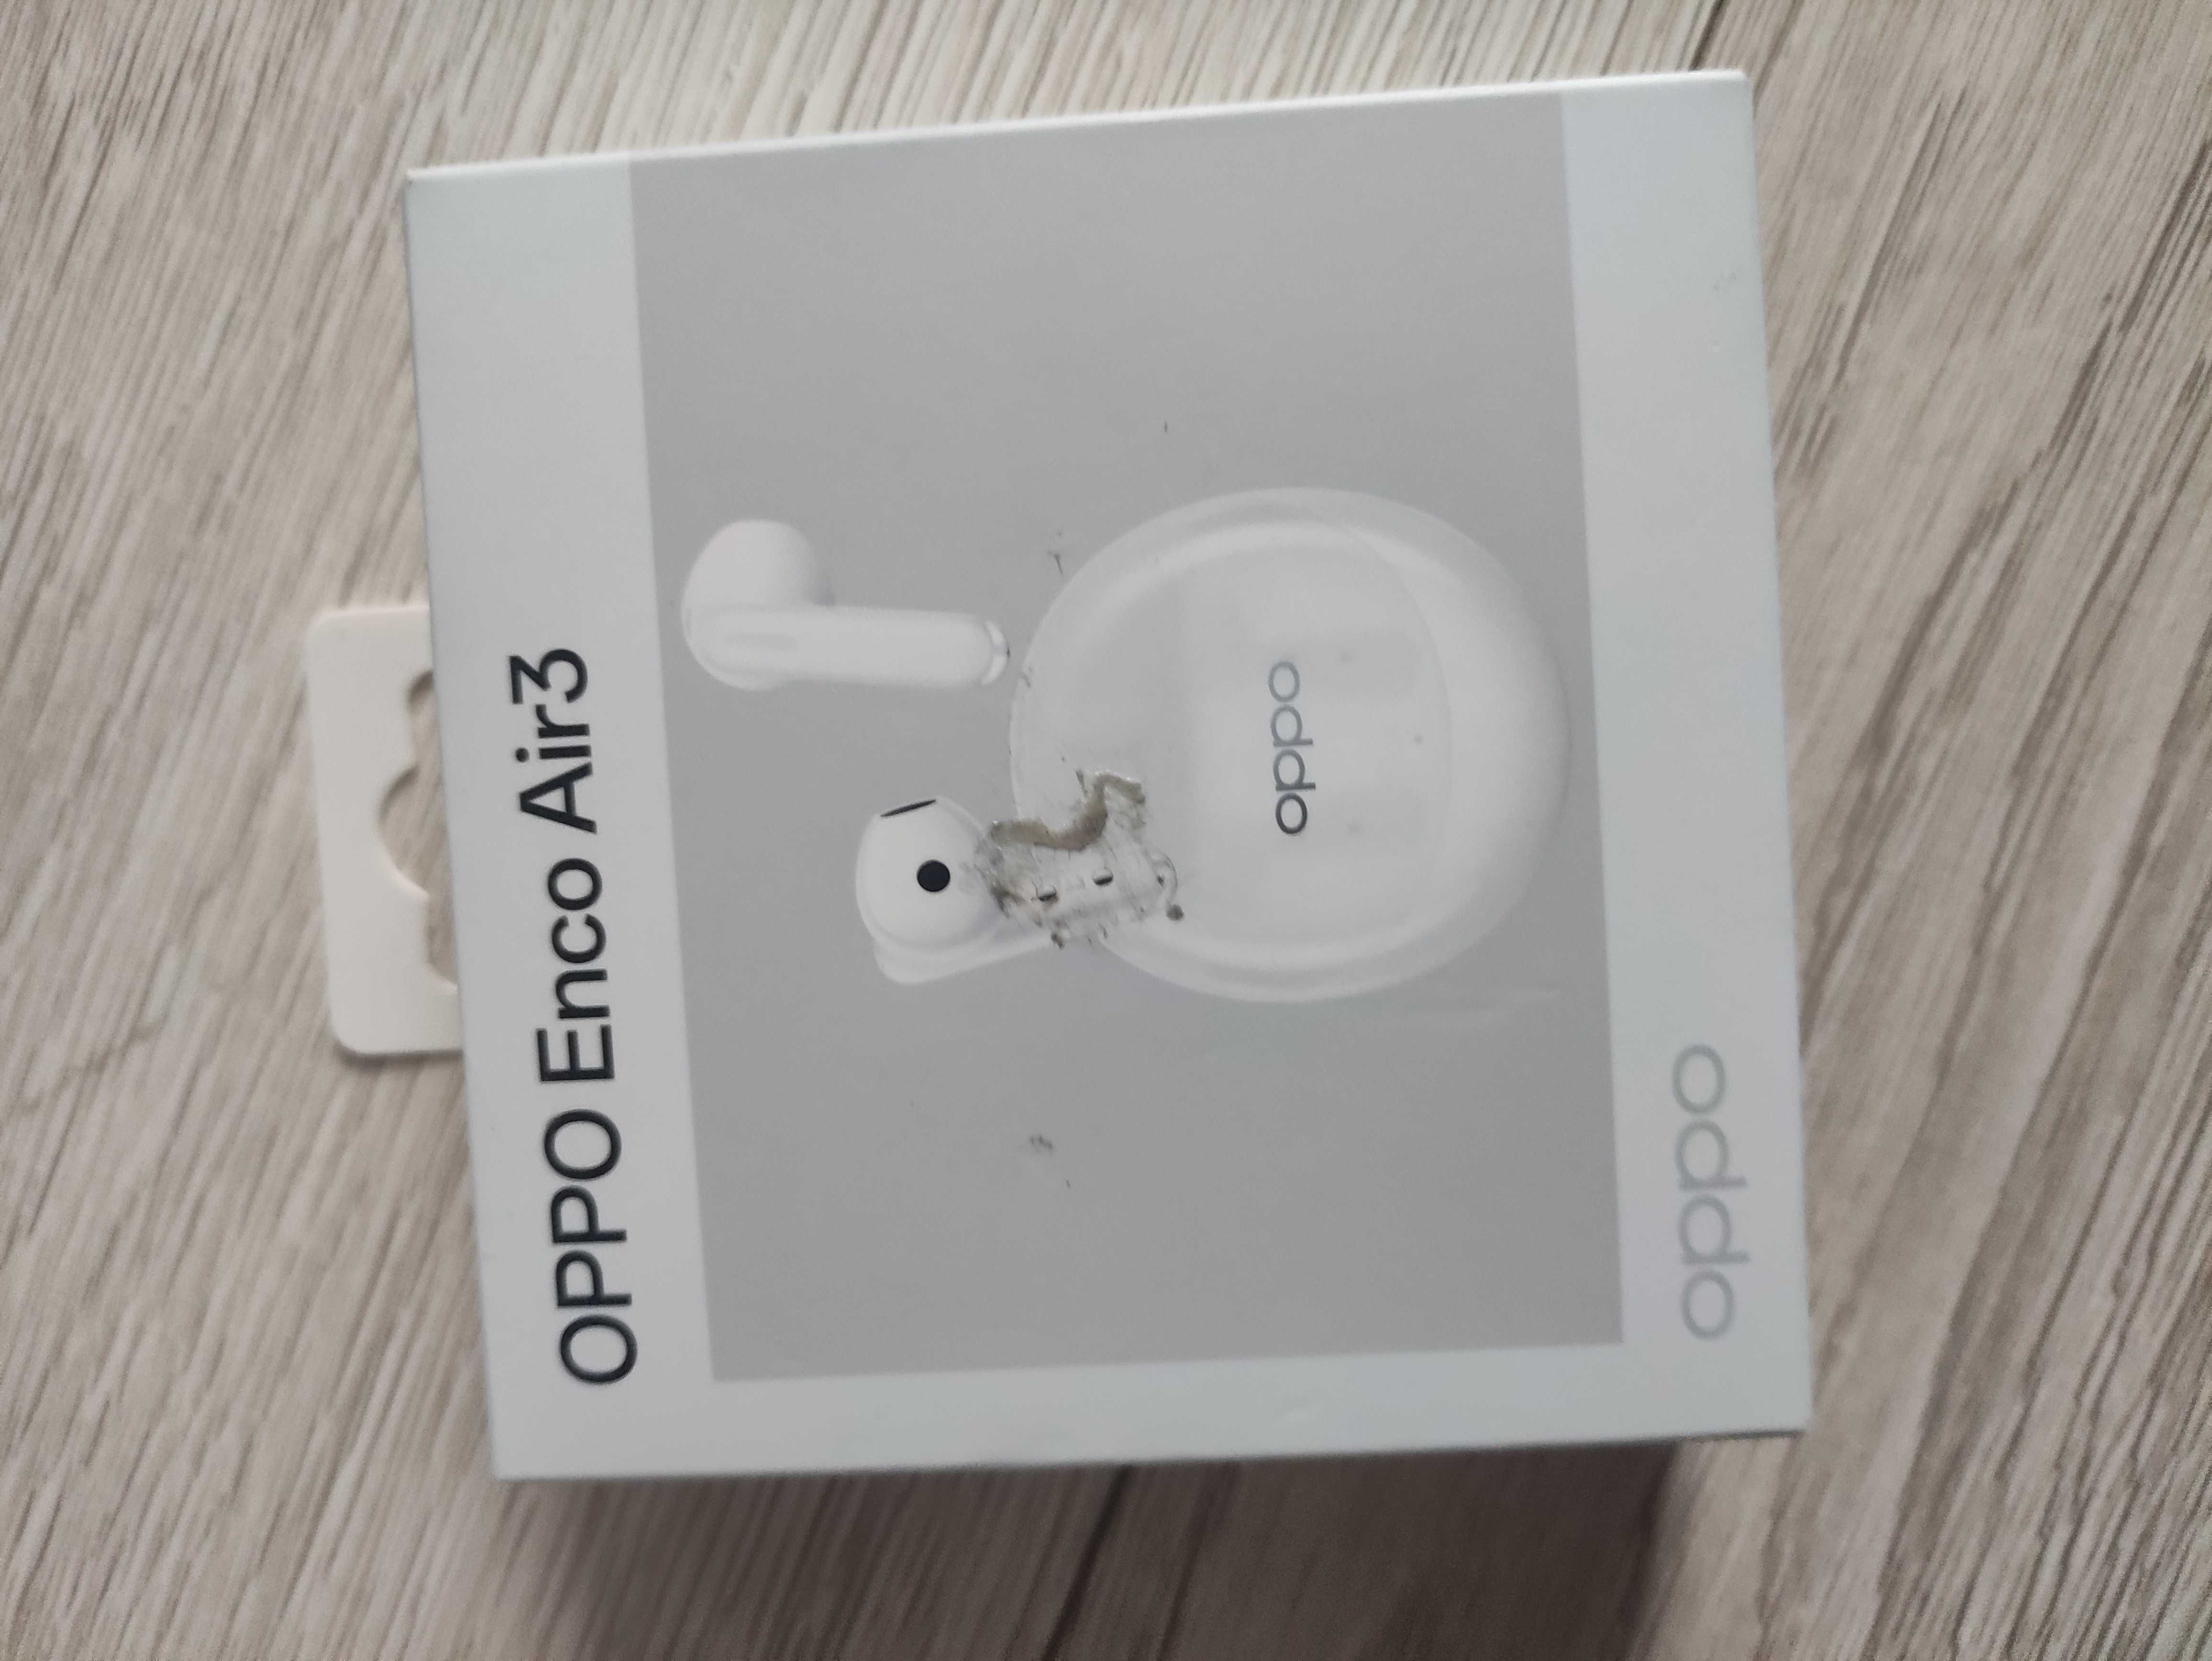 Słuchawki bezprzewodowe douszne Oppo Enco Air3